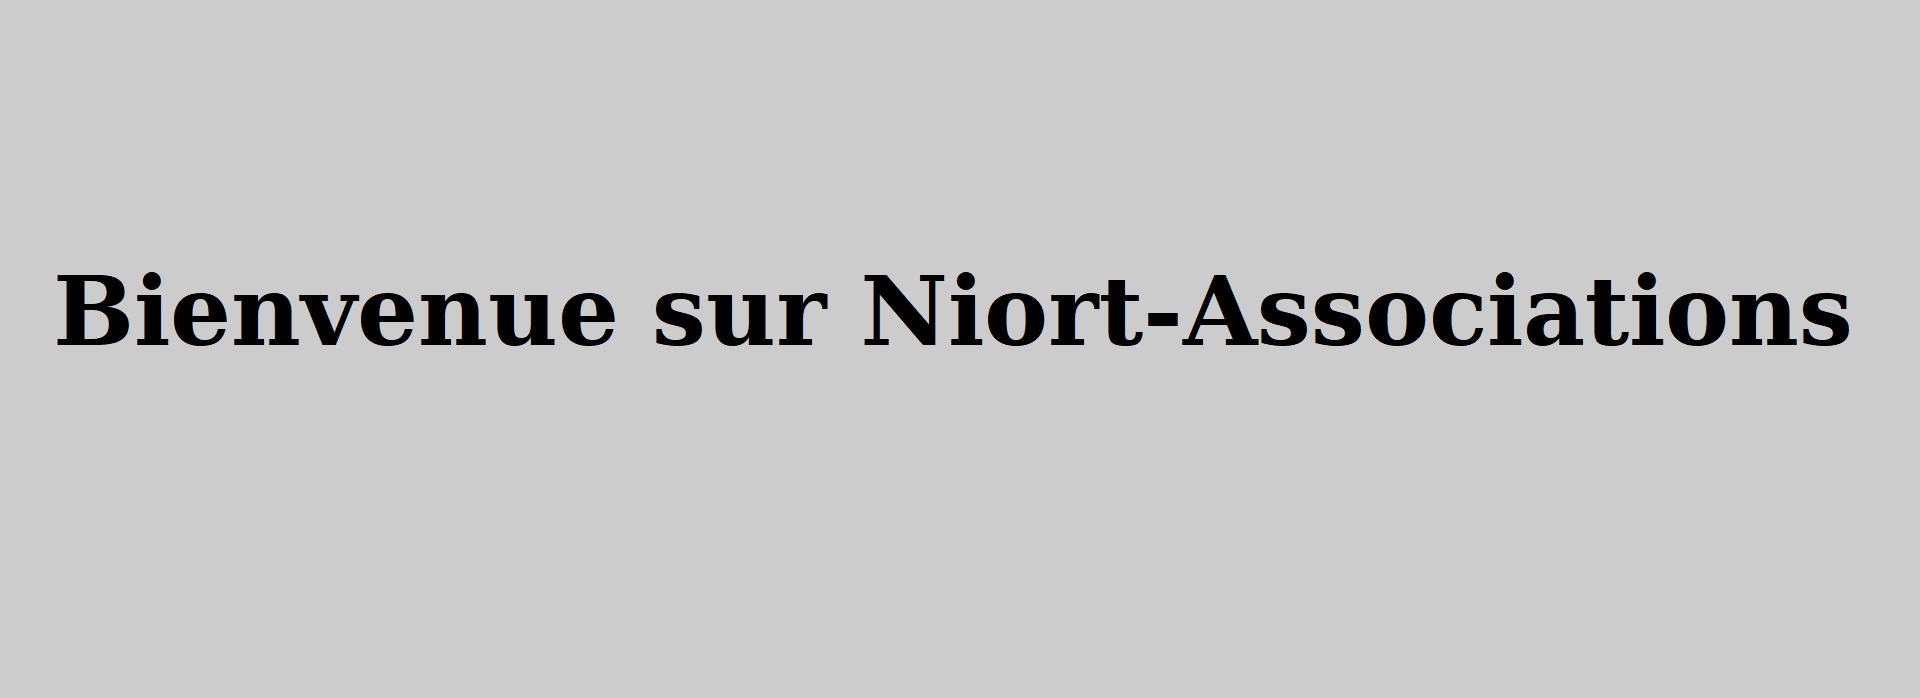 Bonjour Bienvenue sur Niort-Associations